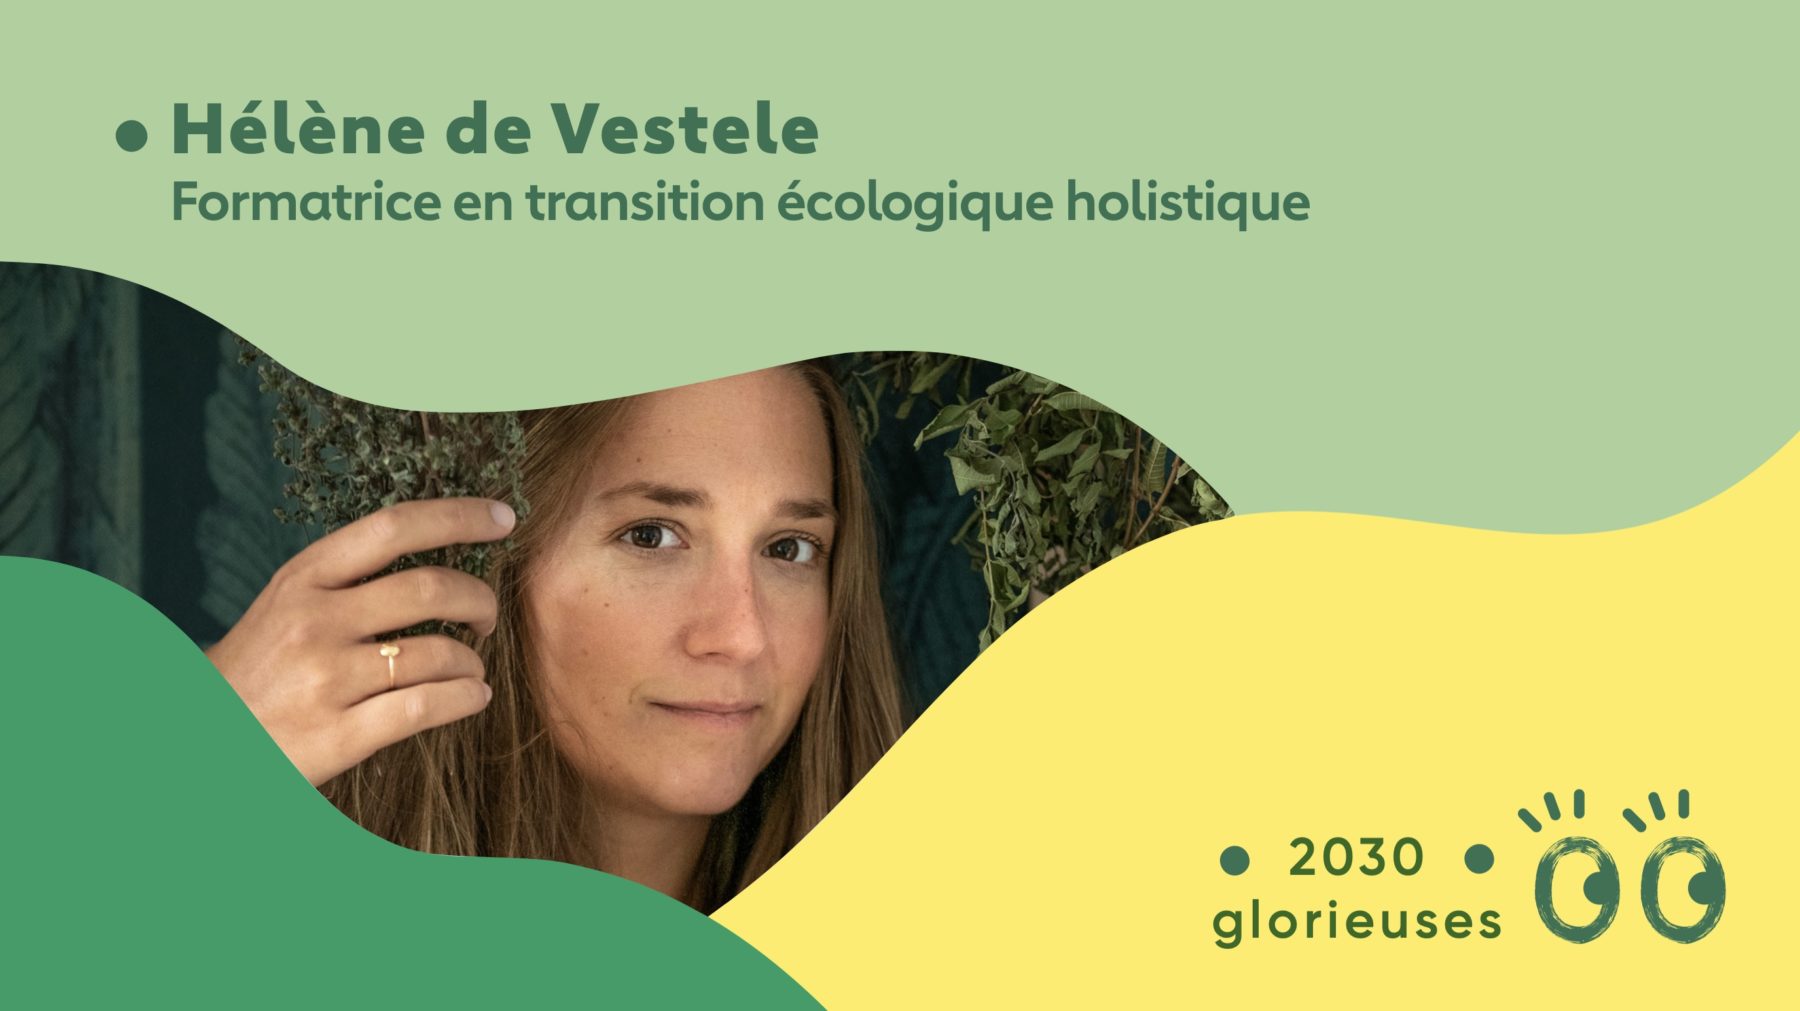 2030 Glorieuses #38 : Hélène de Vestele : “Retrouver son esprit critique et son pouvoir de décision éclairée"